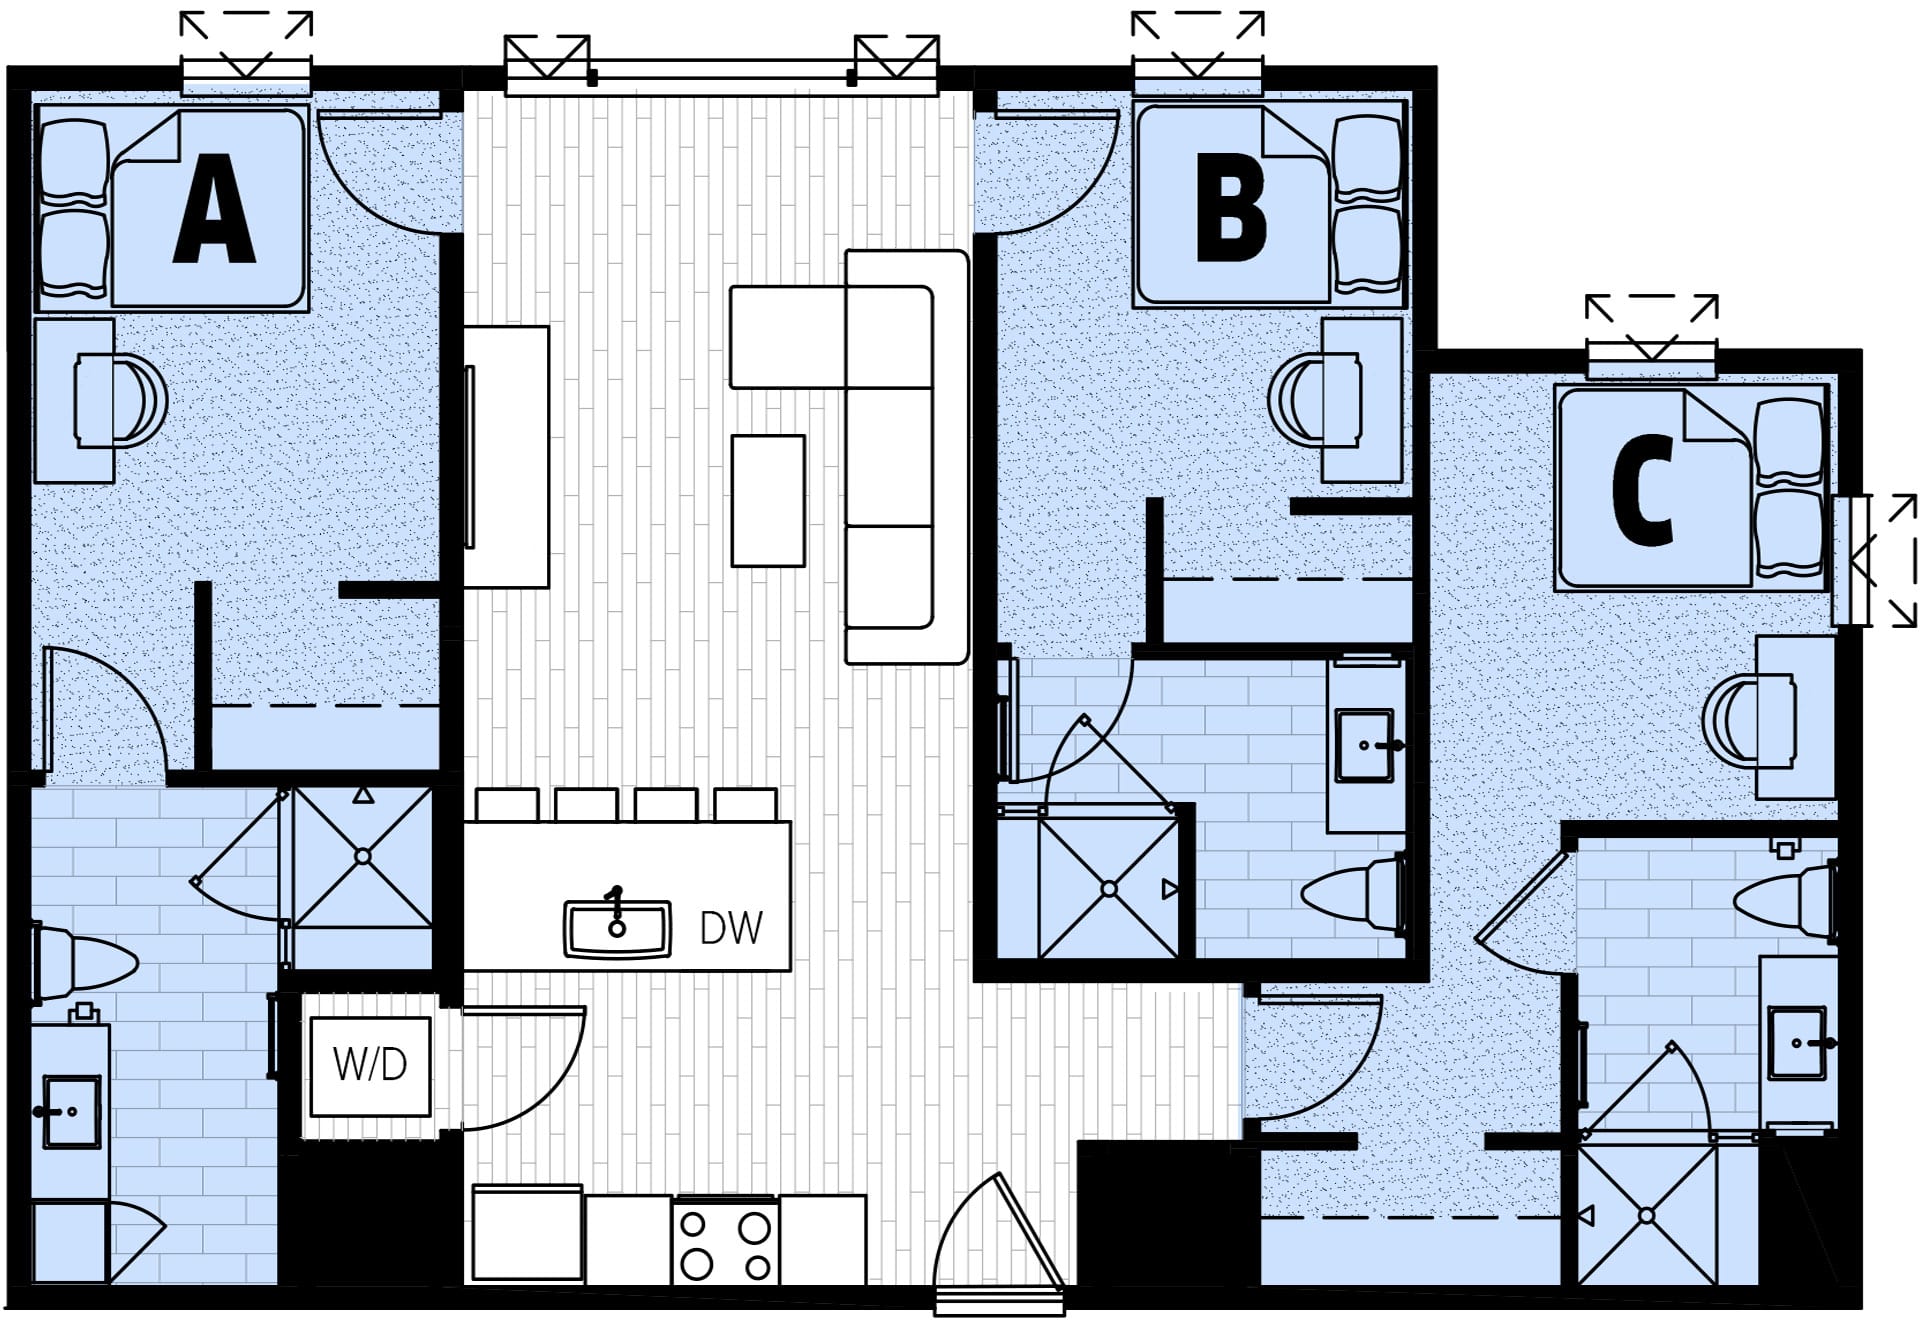 Rendering for 3x3 floor plan